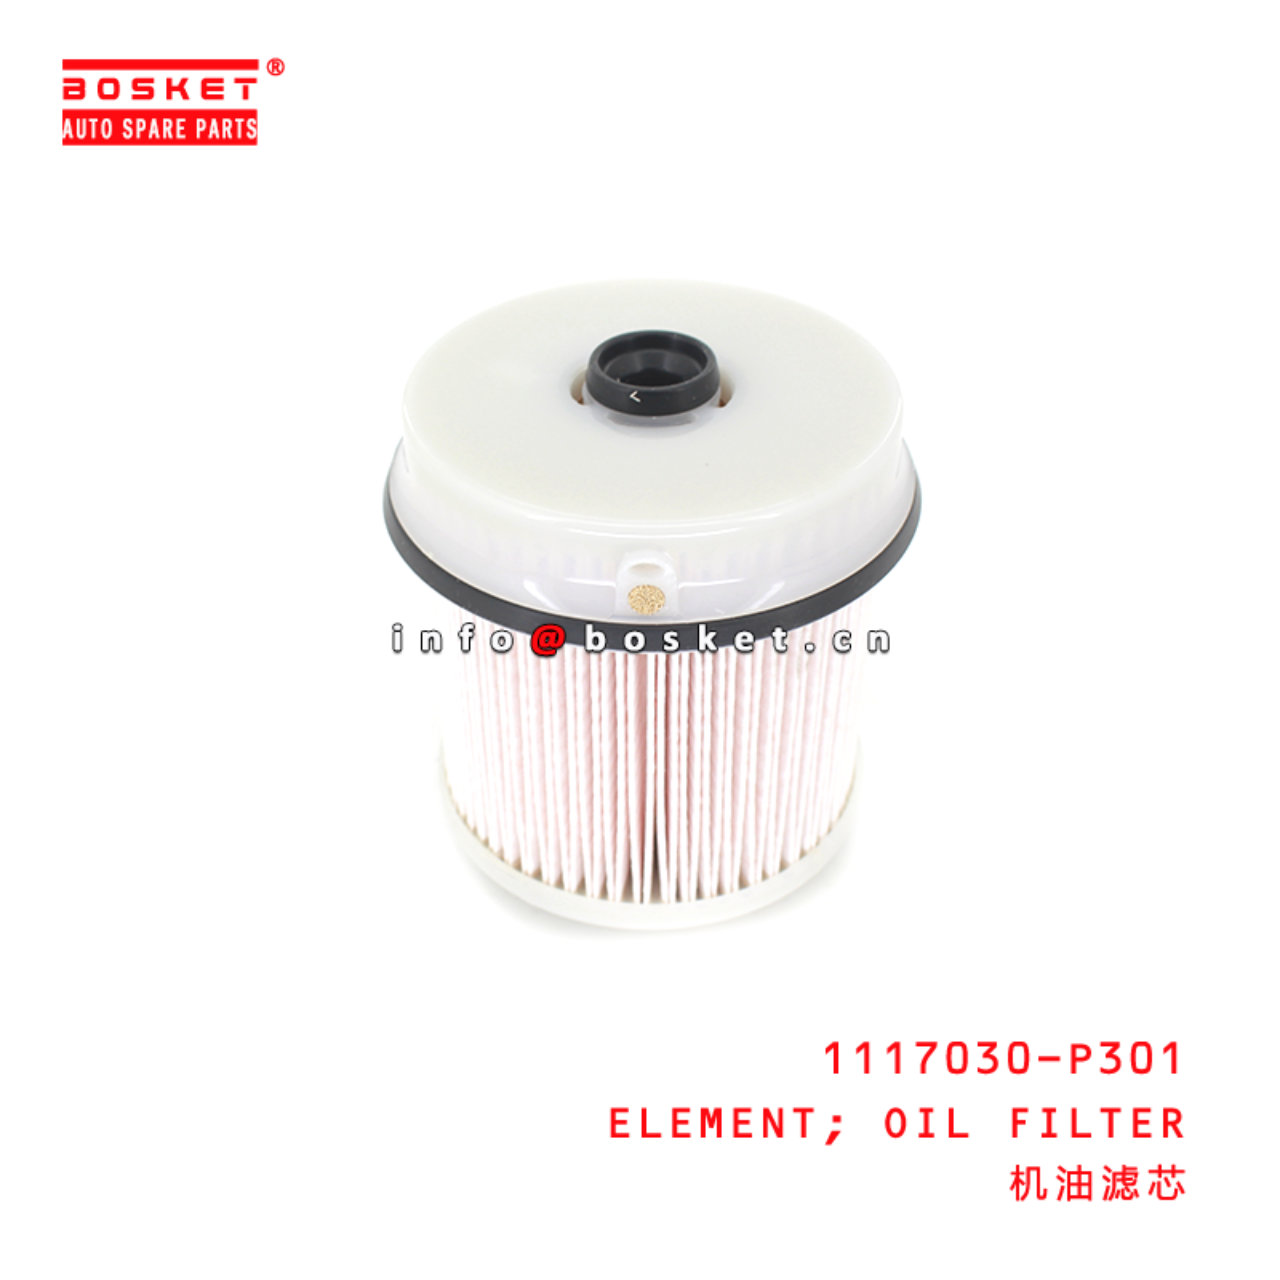 1117030-P301 Oil Filter Element suitable for ISUZU 700P 1117030-P301